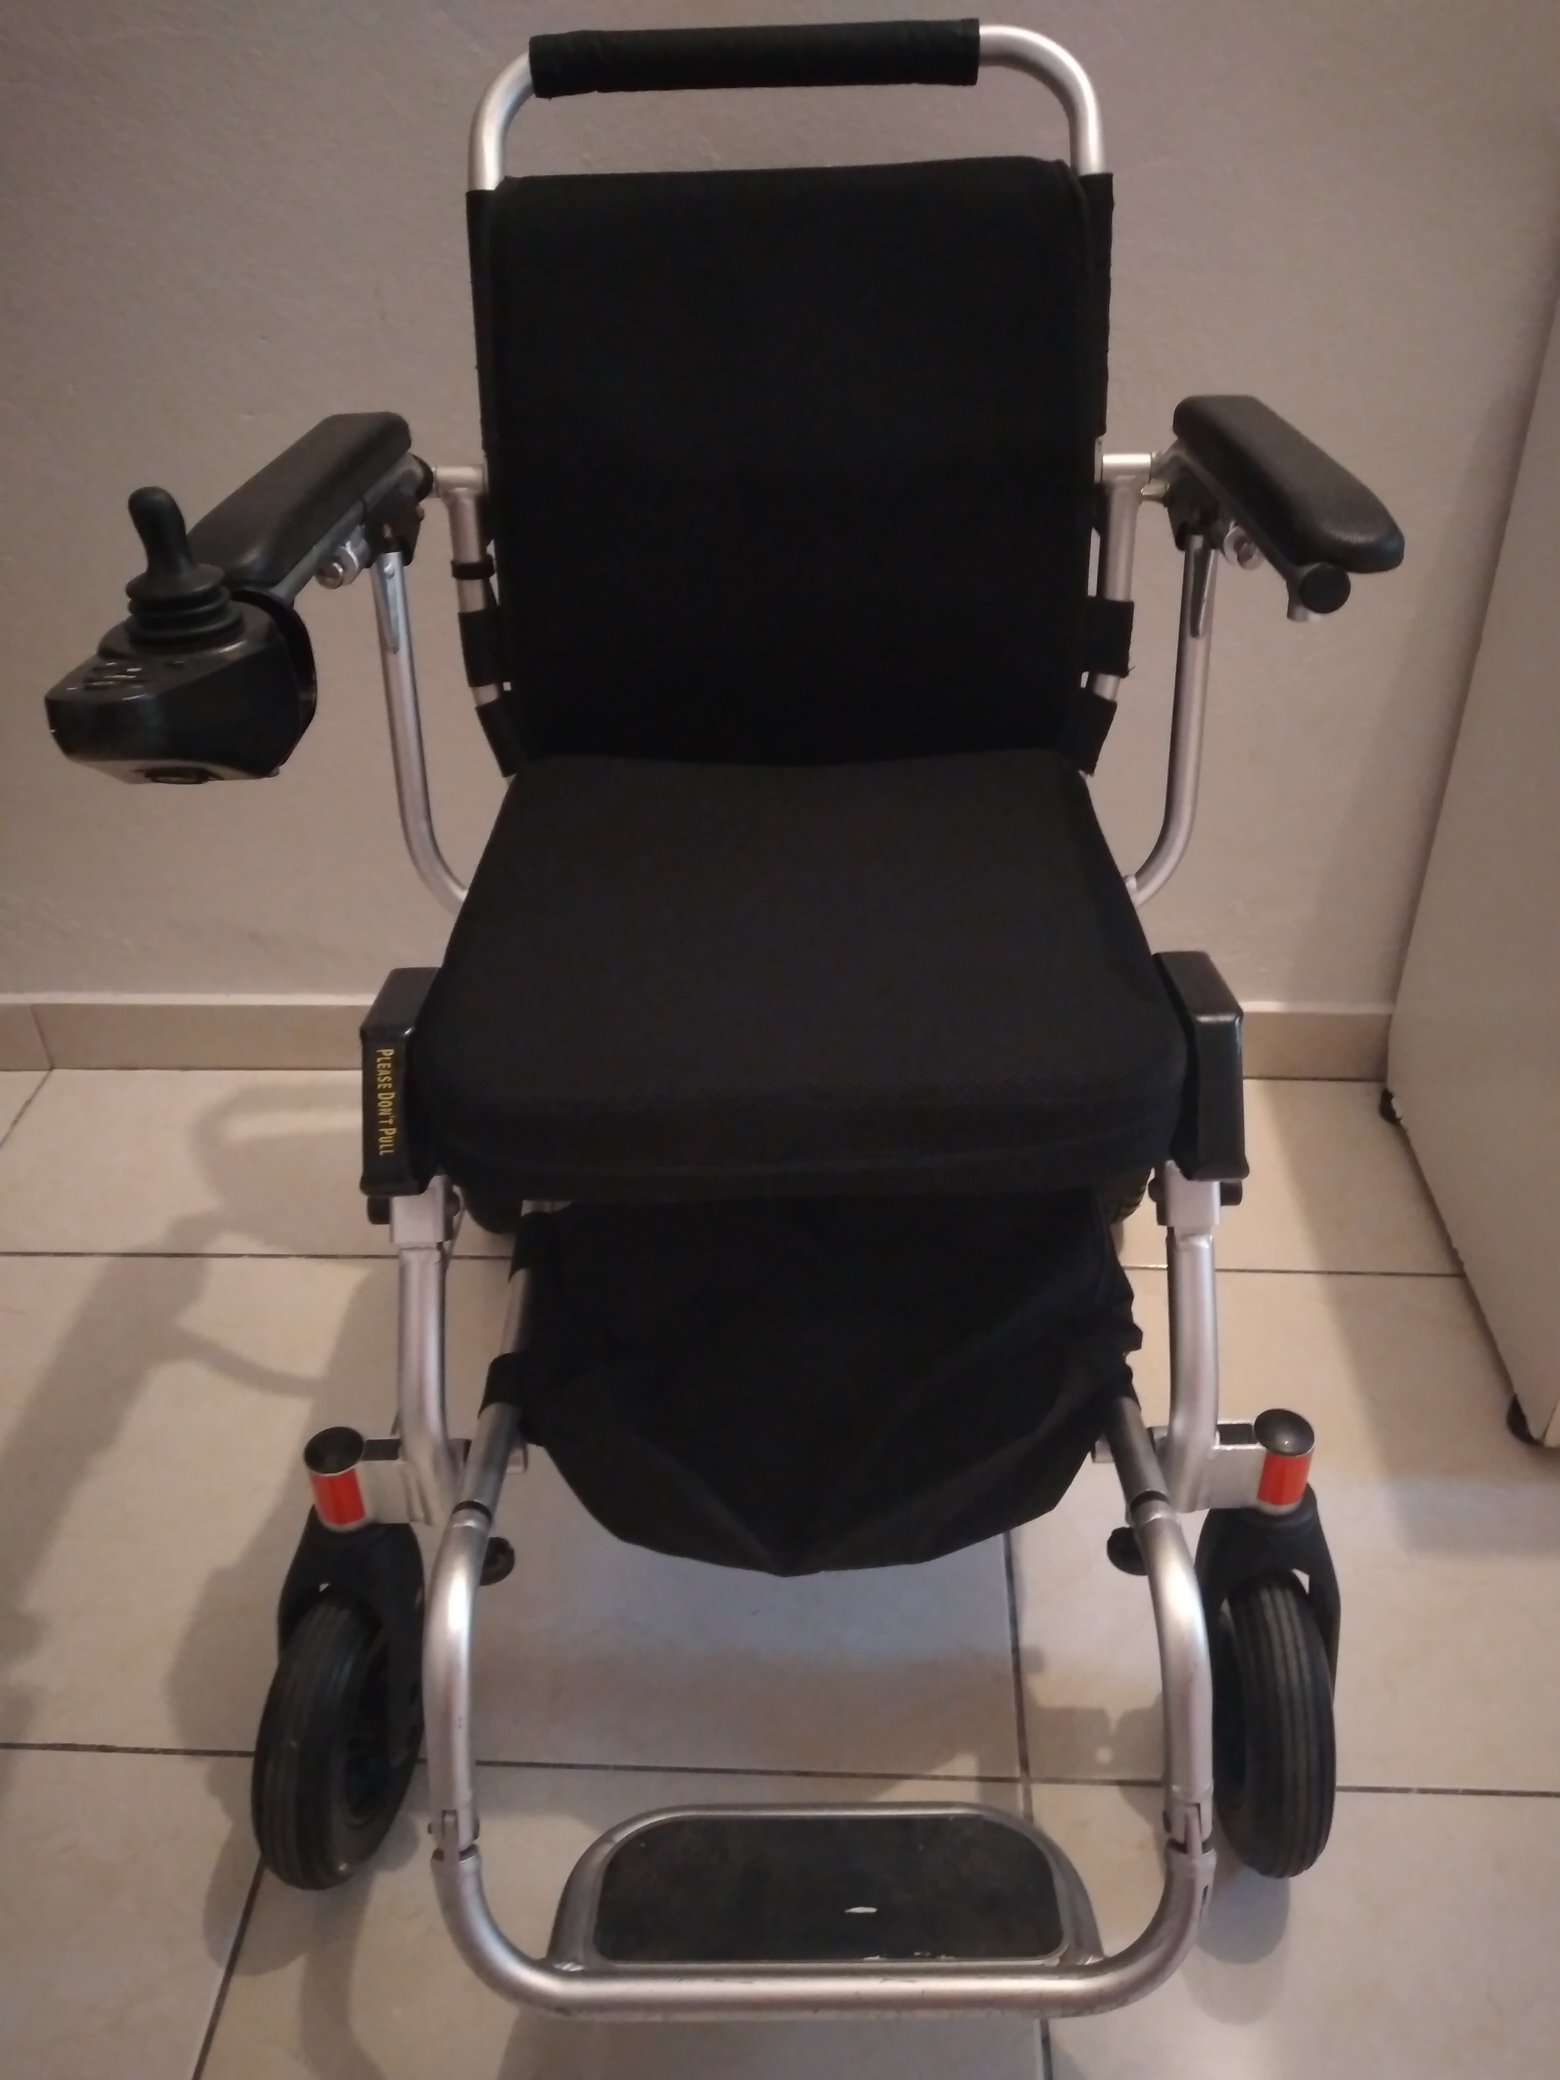 salud y belleza - Wheelchair88 Foldawheel PW-999UL La silla eléctrica mas ligera del mundo